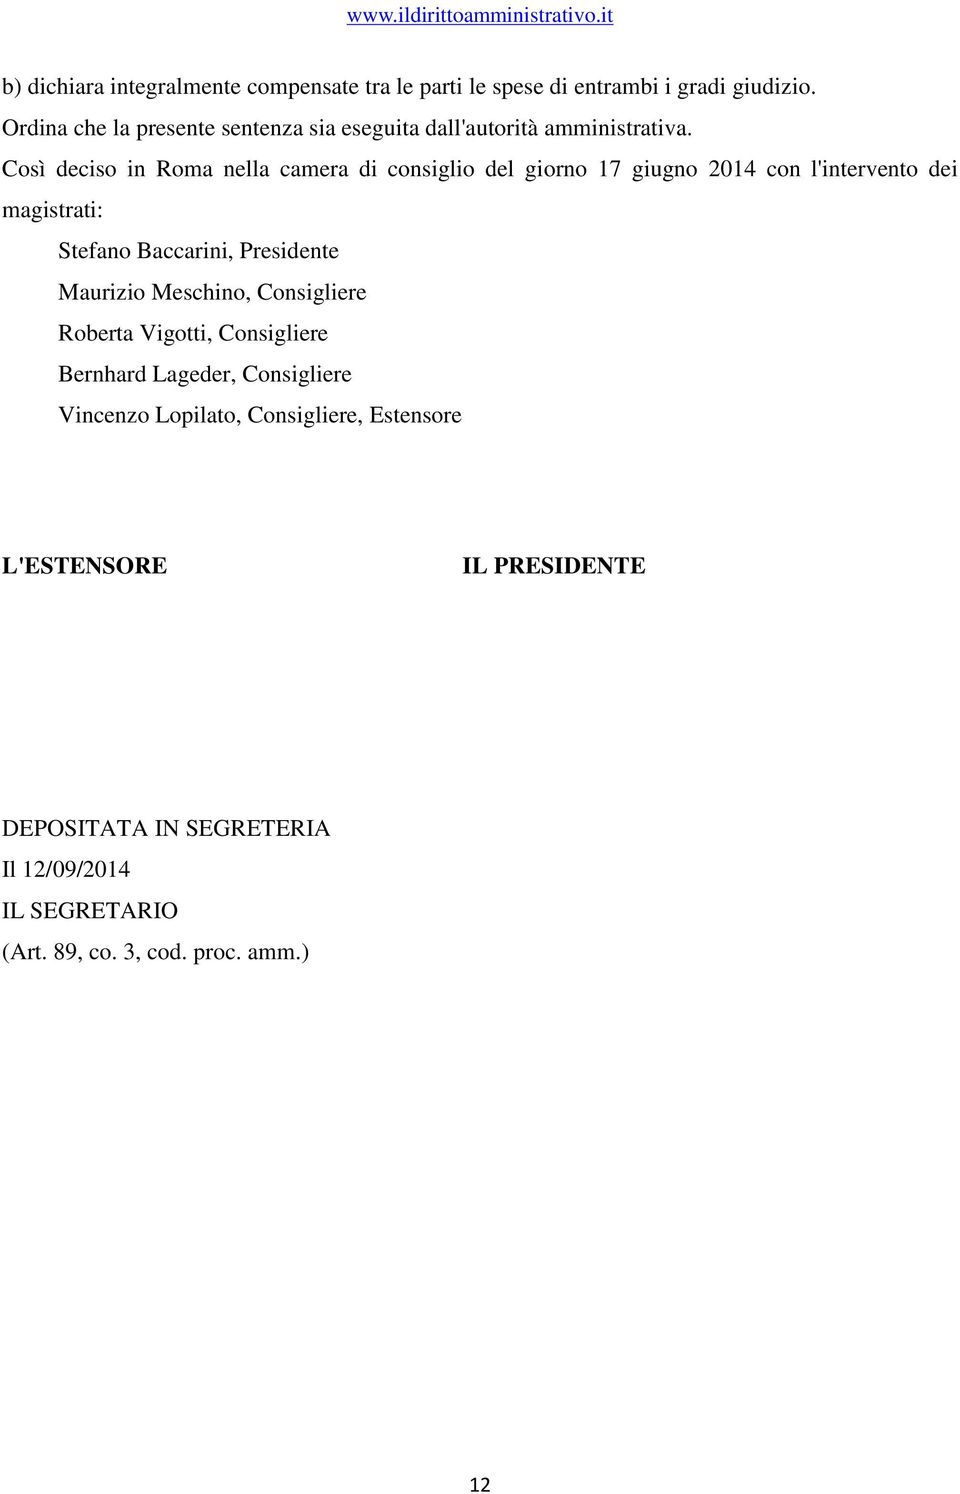 Così deciso in Roma nella camera di consiglio del giorno 17 giugno 2014 con l'intervento dei magistrati: Stefano Baccarini, Presidente